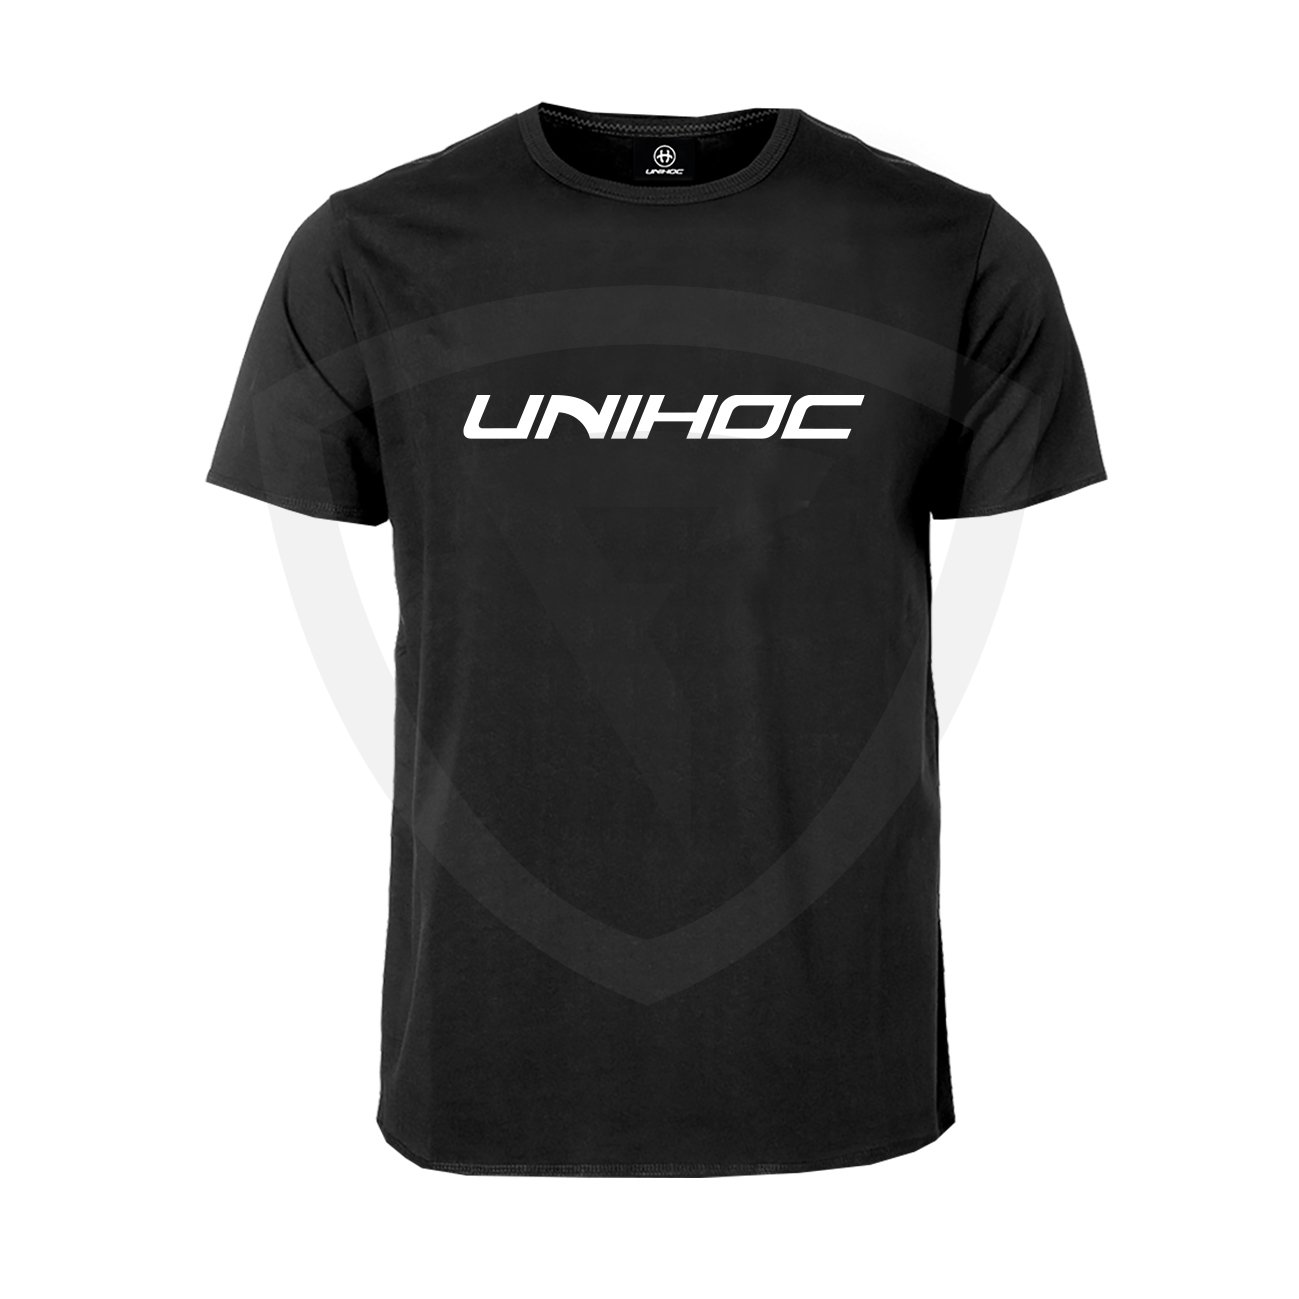 Unihoc T-shirt Classic Black SR L černá